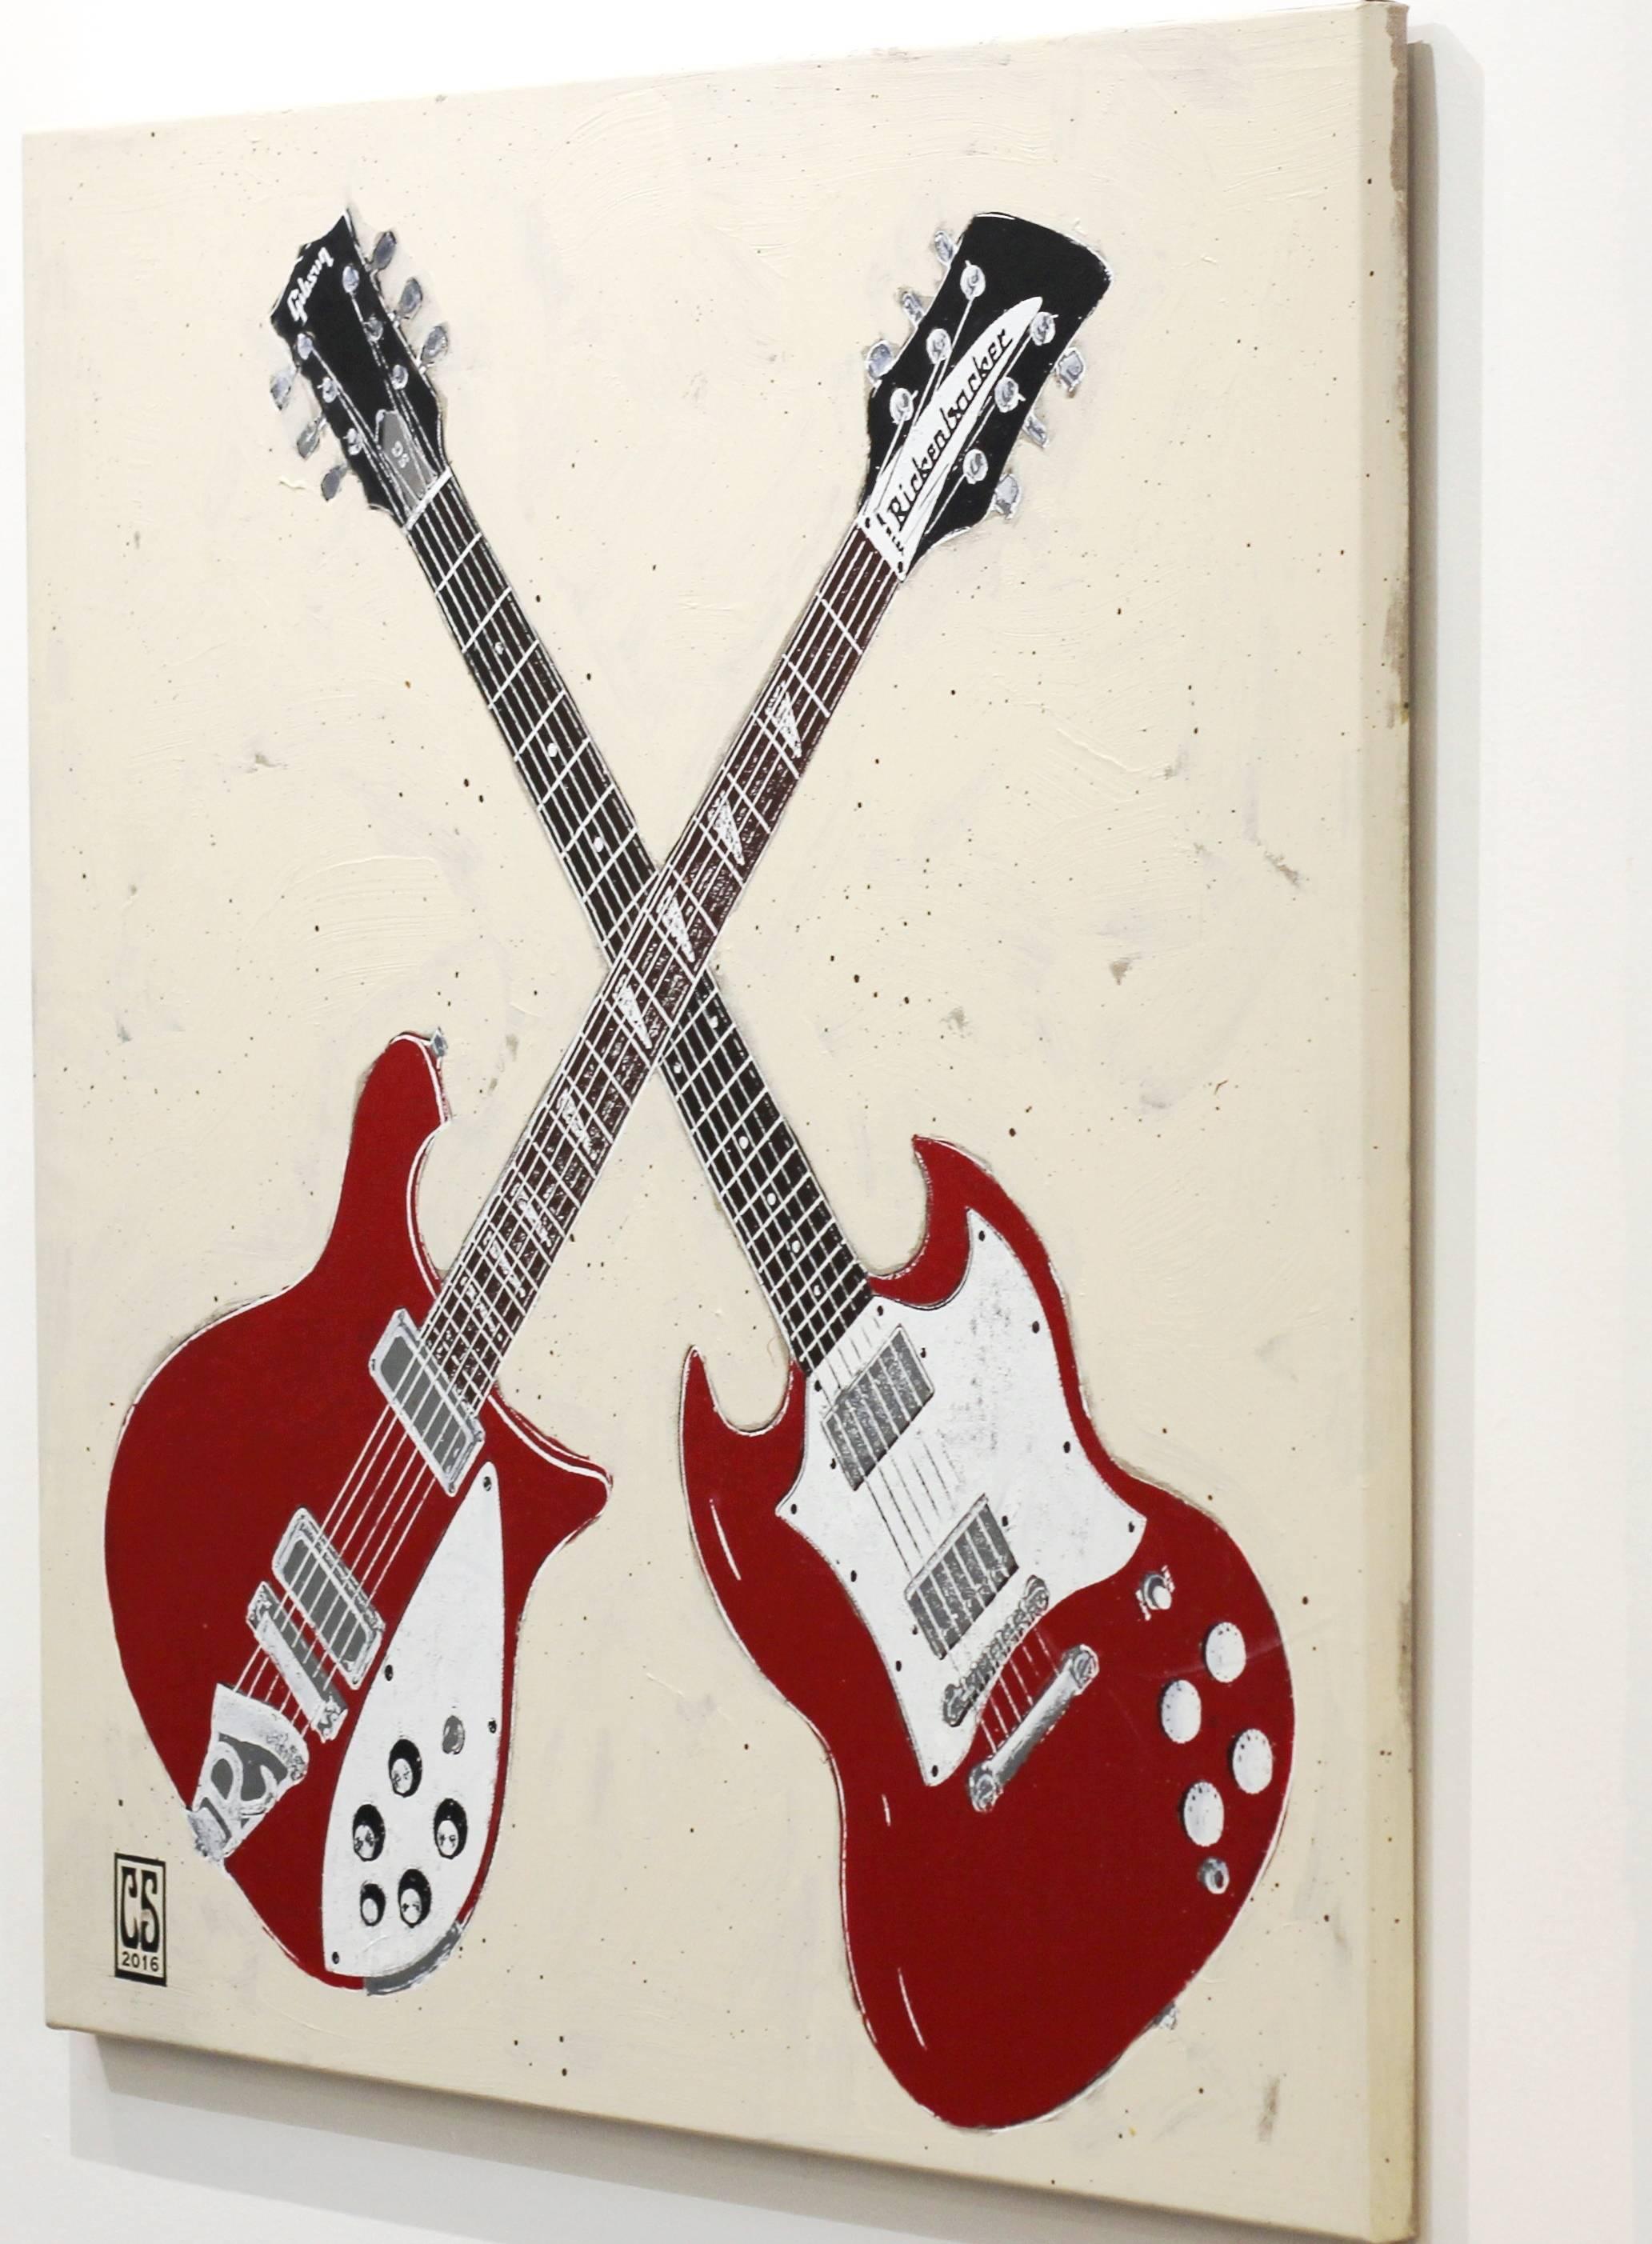 Double Trouble - Deux guitares rouges - Peinture d'instrument de musique originale sur toile - Pop Art Painting par Carl Smith